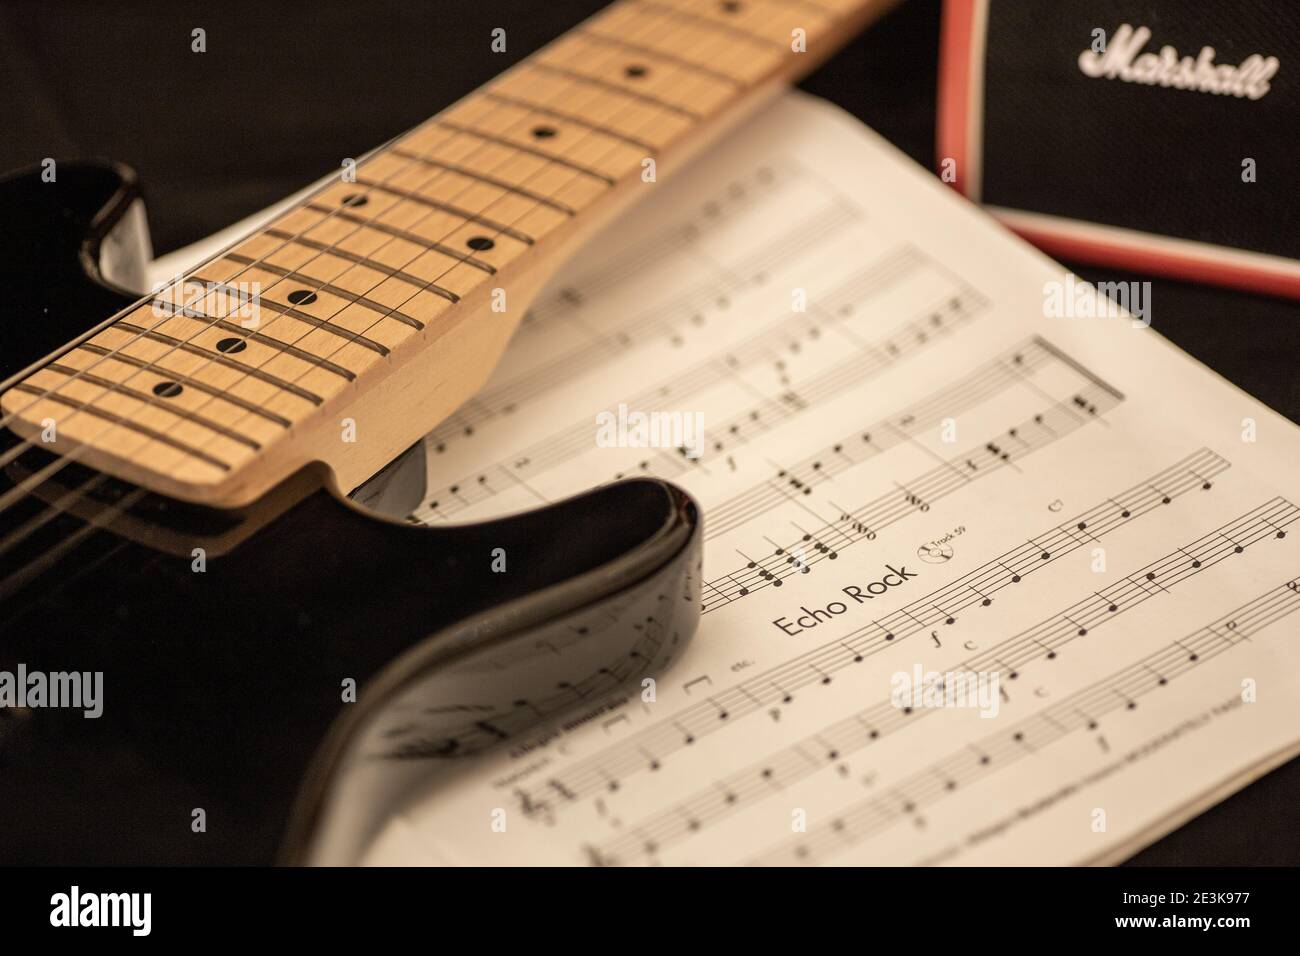 Nahaufnahme von E-Gitarre und Musikbuch mit einem Marshallverstärker im Hintergrund. Üben, komponieren oder produzieren Sie Rockmusik. Stockfoto